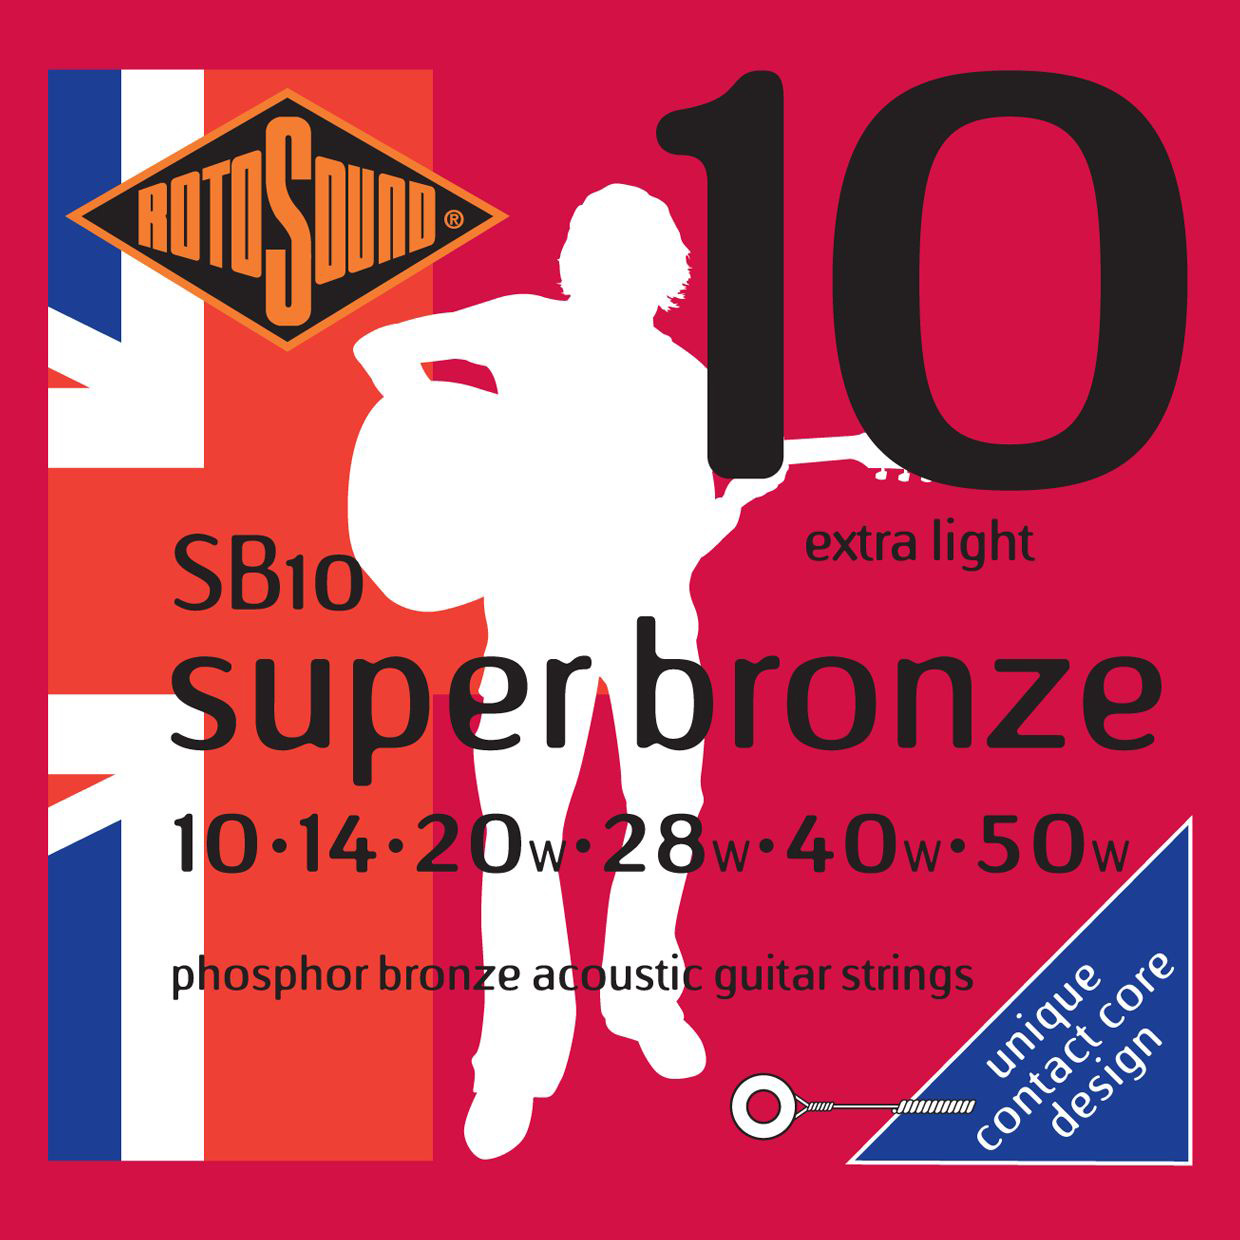 Rotosound SB10 STRINGS PHOSPHOR BRONZE Струны для акустических гитар